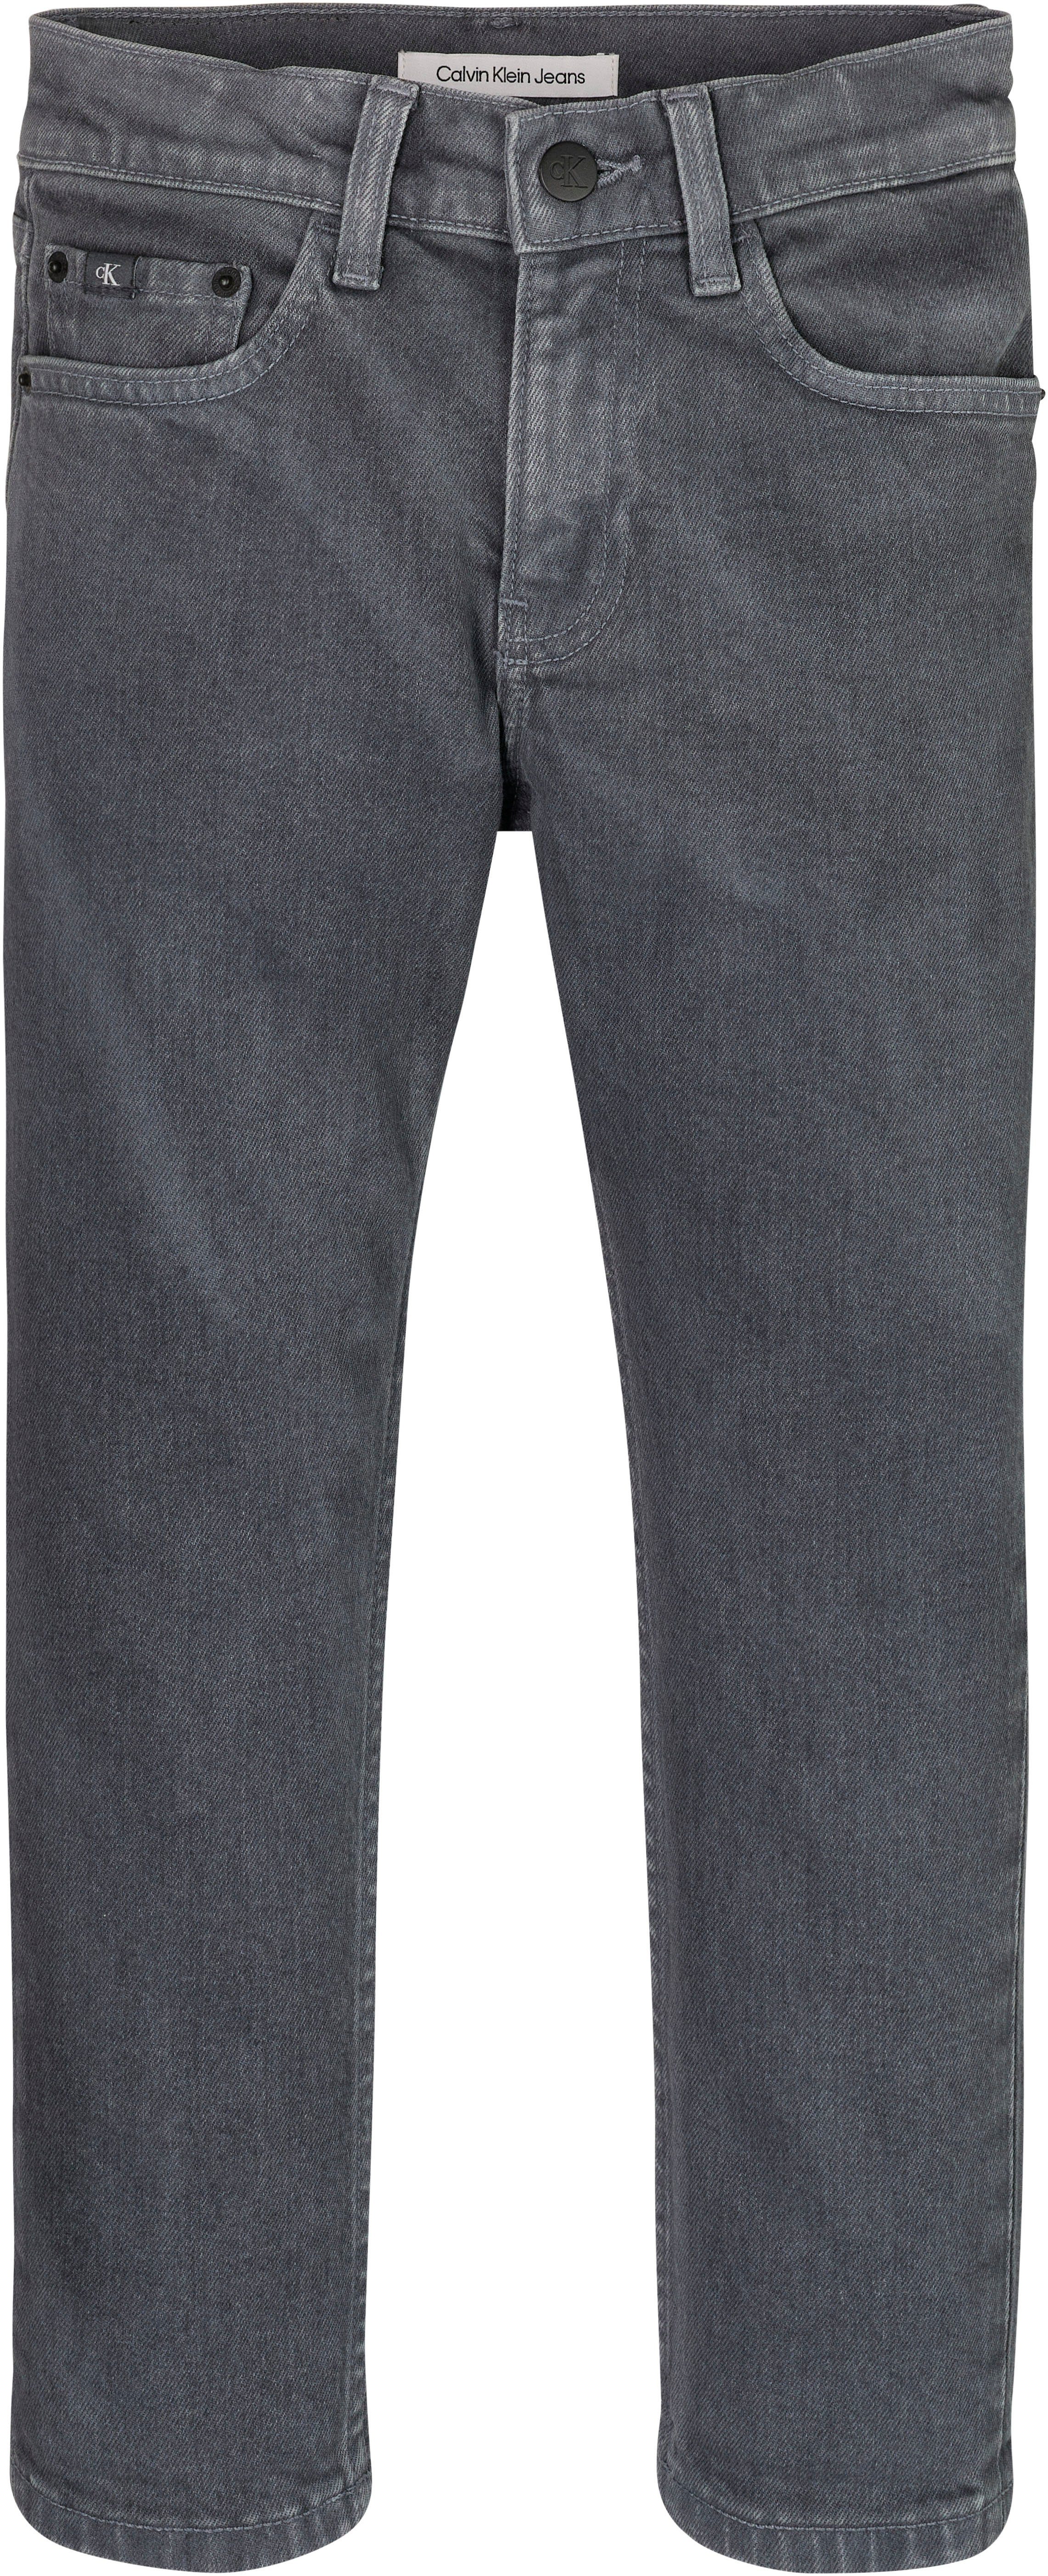 OVERDYED Calvin GREY DARK Klein DAD Stretch-Jeans Jeans